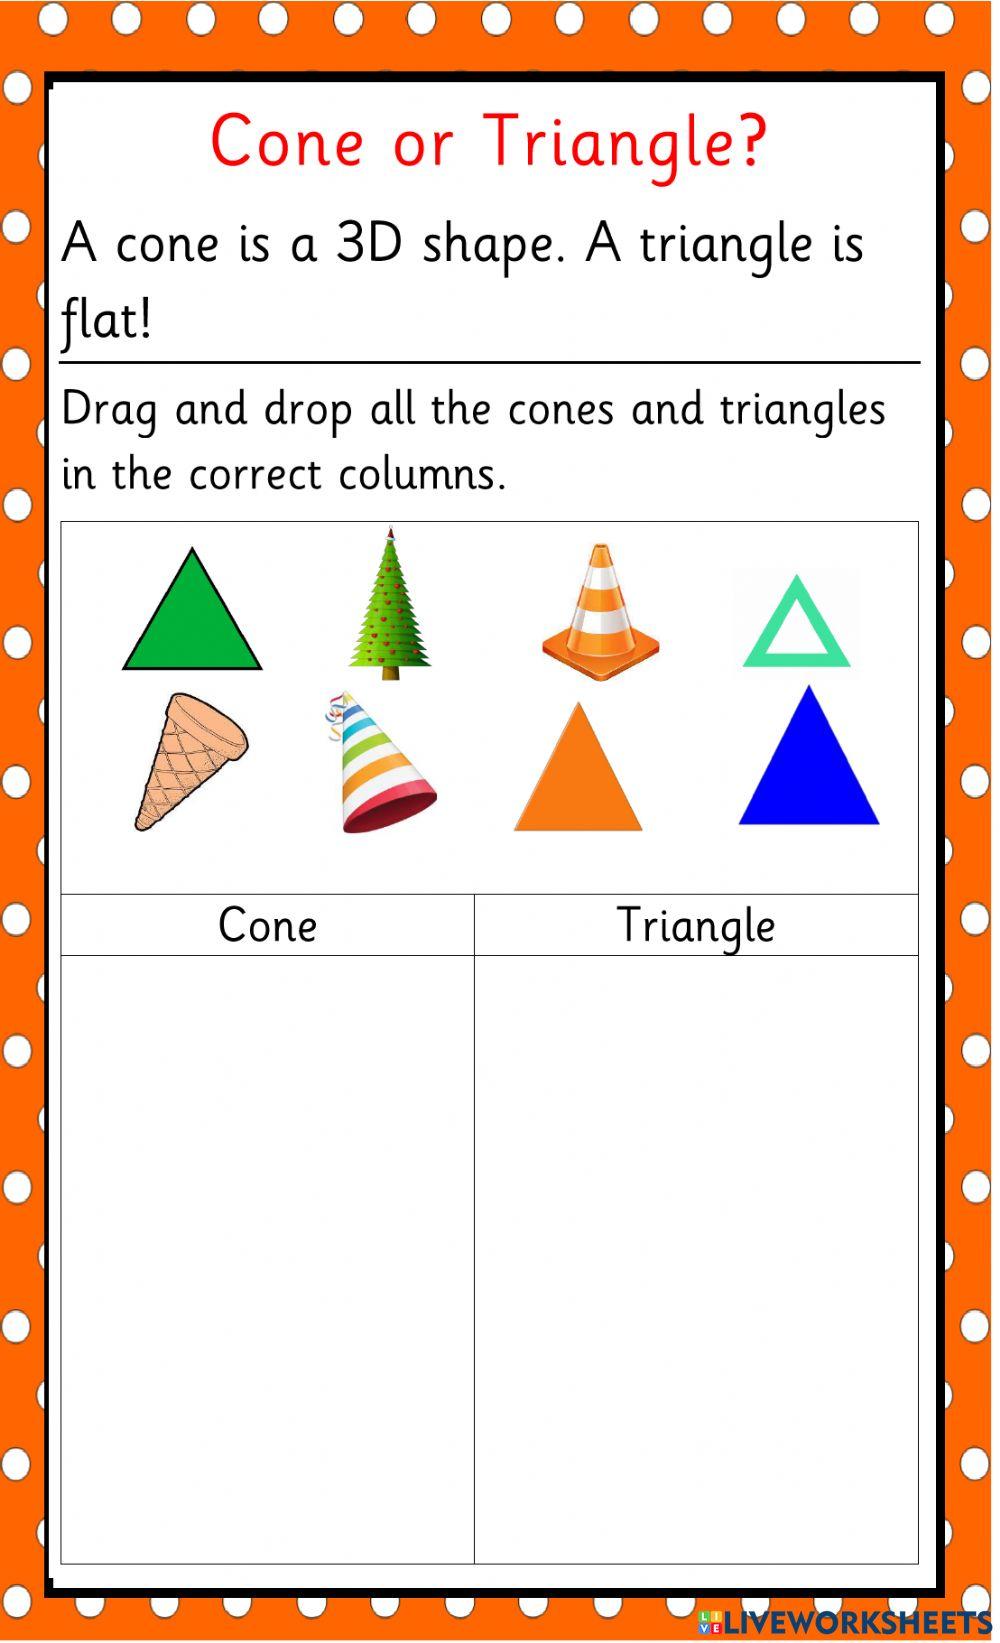 Cone or Triangle